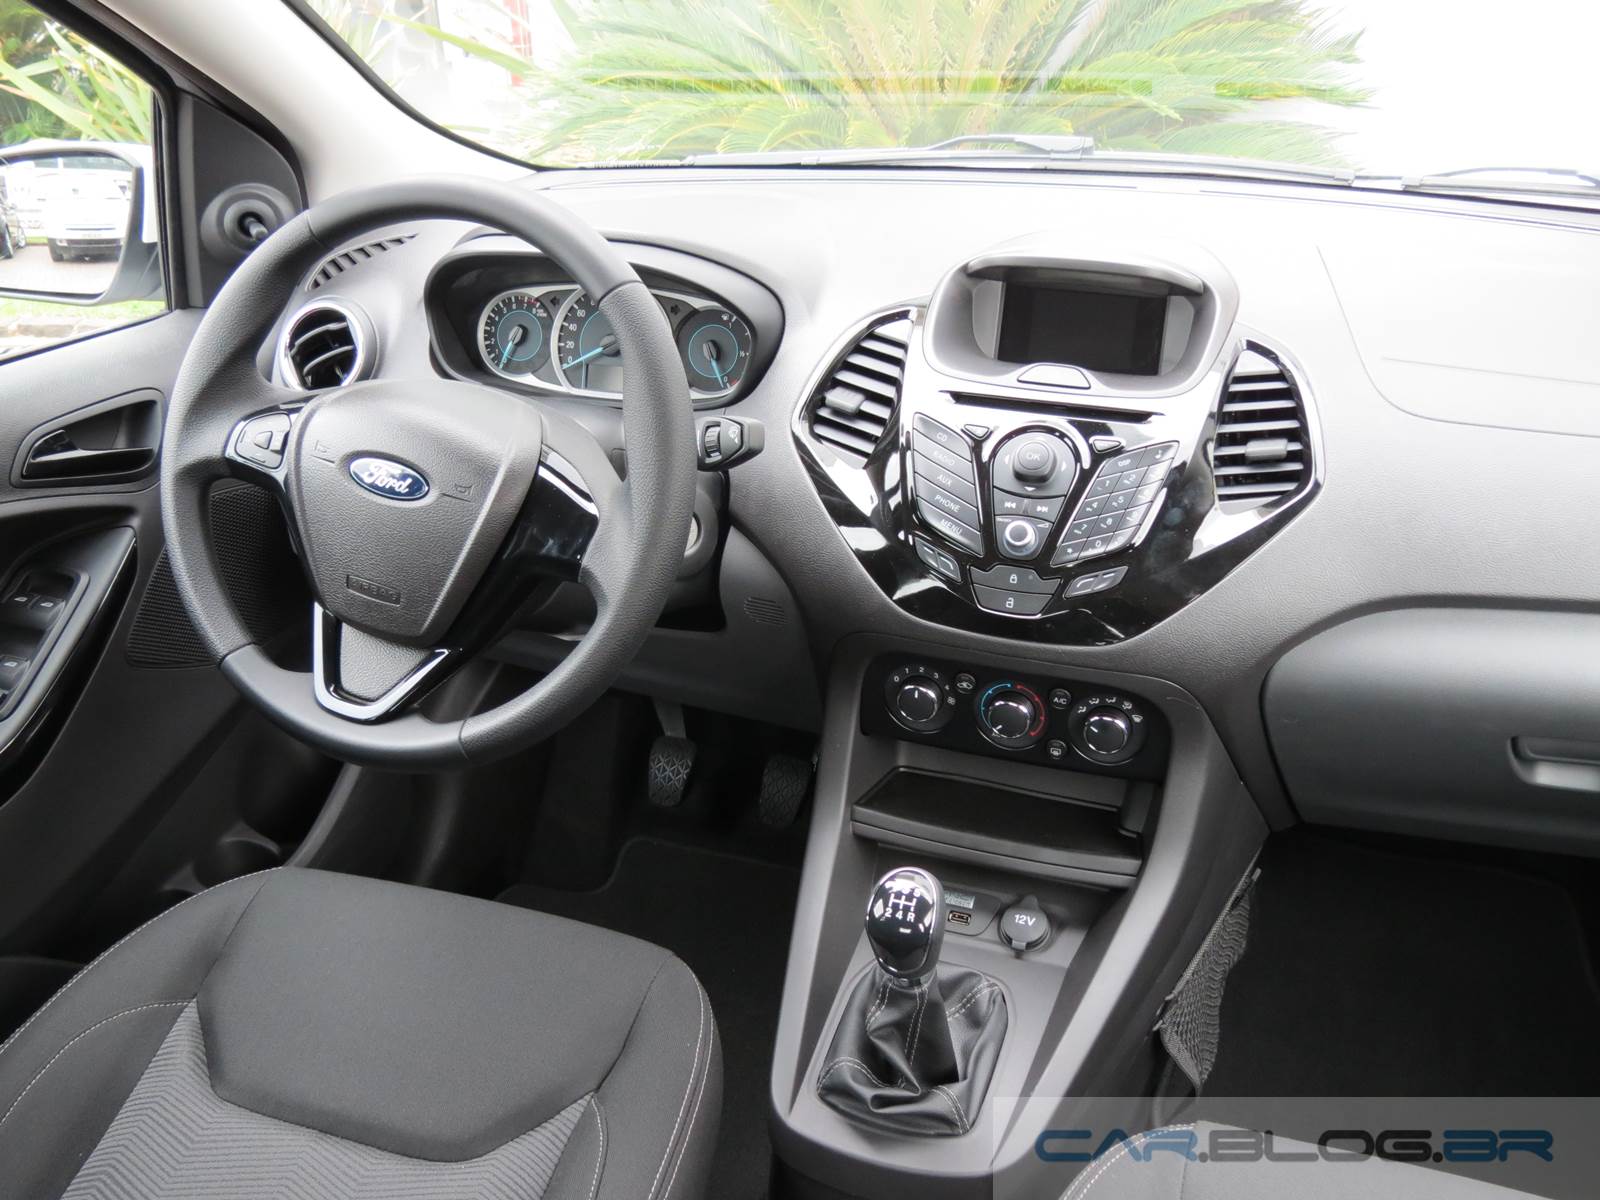 Novo Ford Ka+ SEL 1.0 2015 - interior